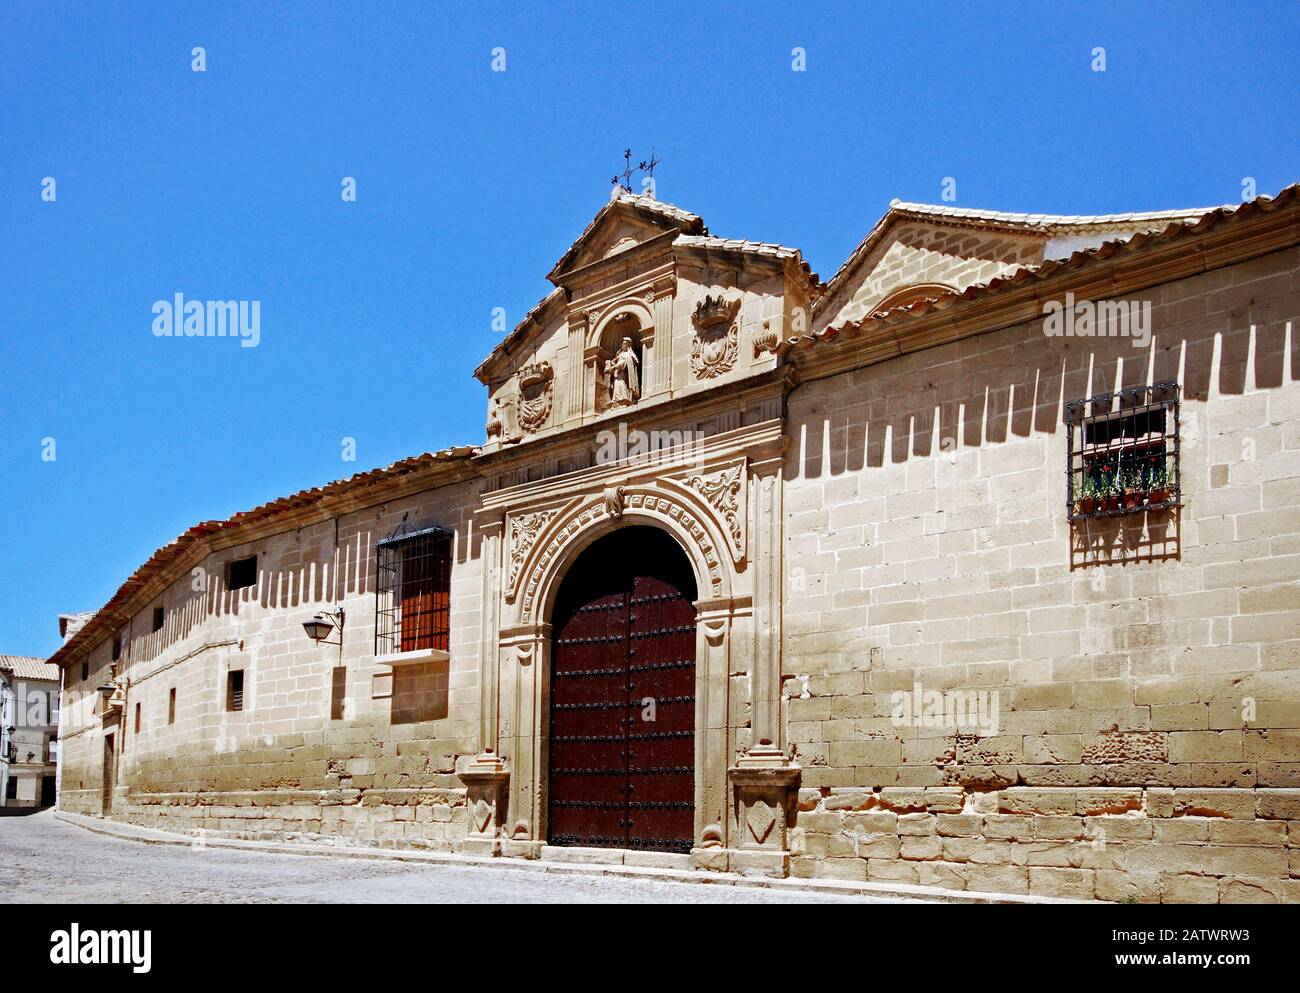 Vue sur le couvent de Santa Clara (XIIIe - XVIIIe siècles), Ubeda, Andalousie, Espagne. Banque D'Images